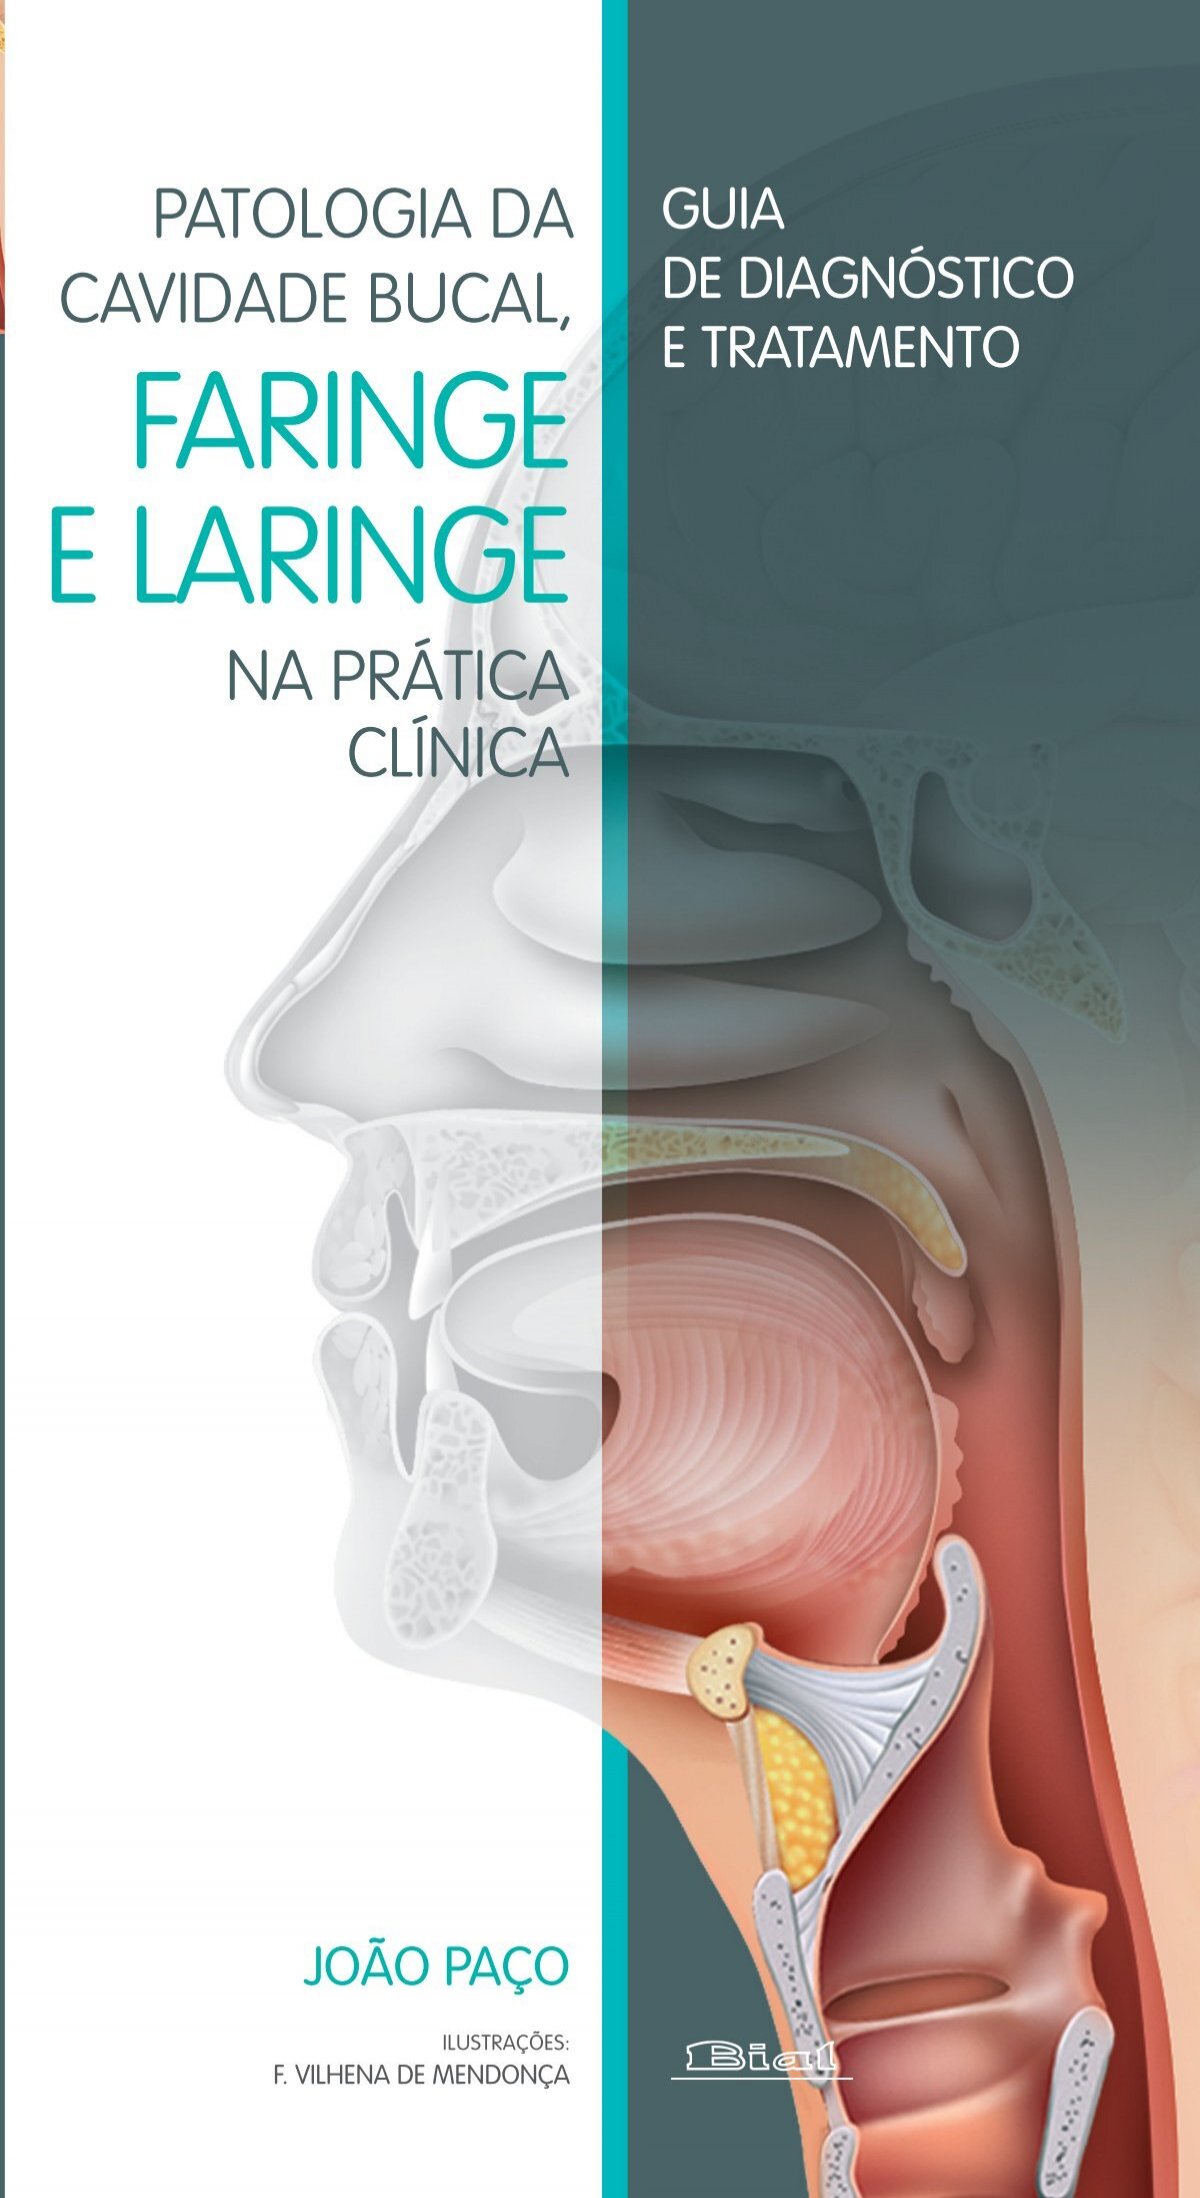 Partes Do Corpo Humano - Imprimir Caça Palavras, PDF, Órgão (anatomia)